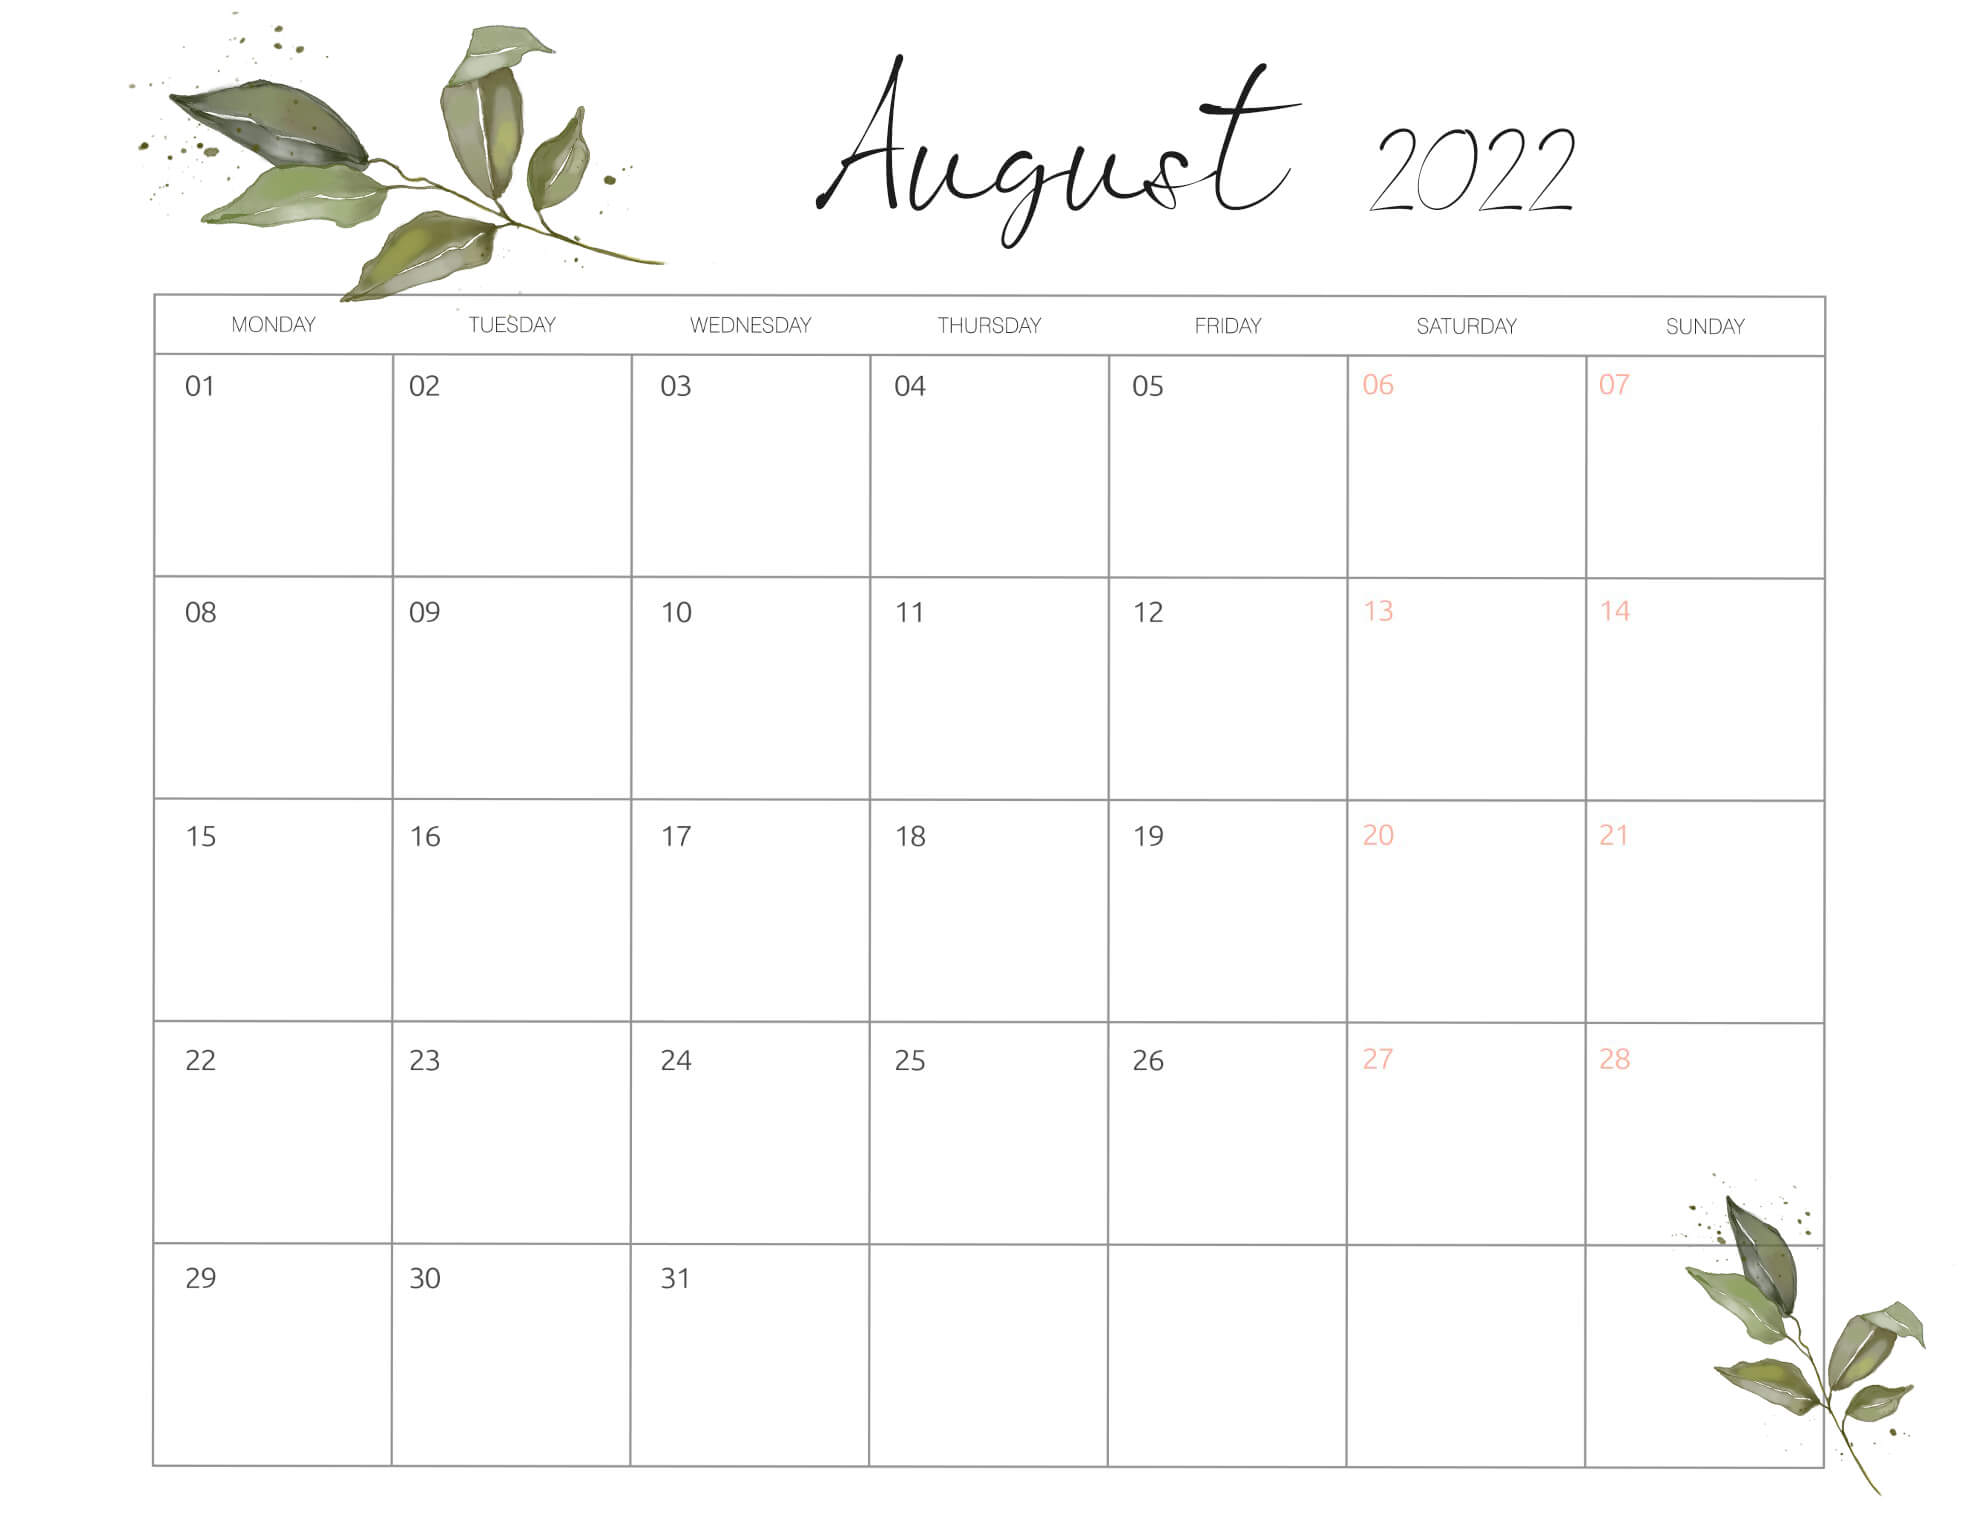 August 2022 Wallpaper Calendar